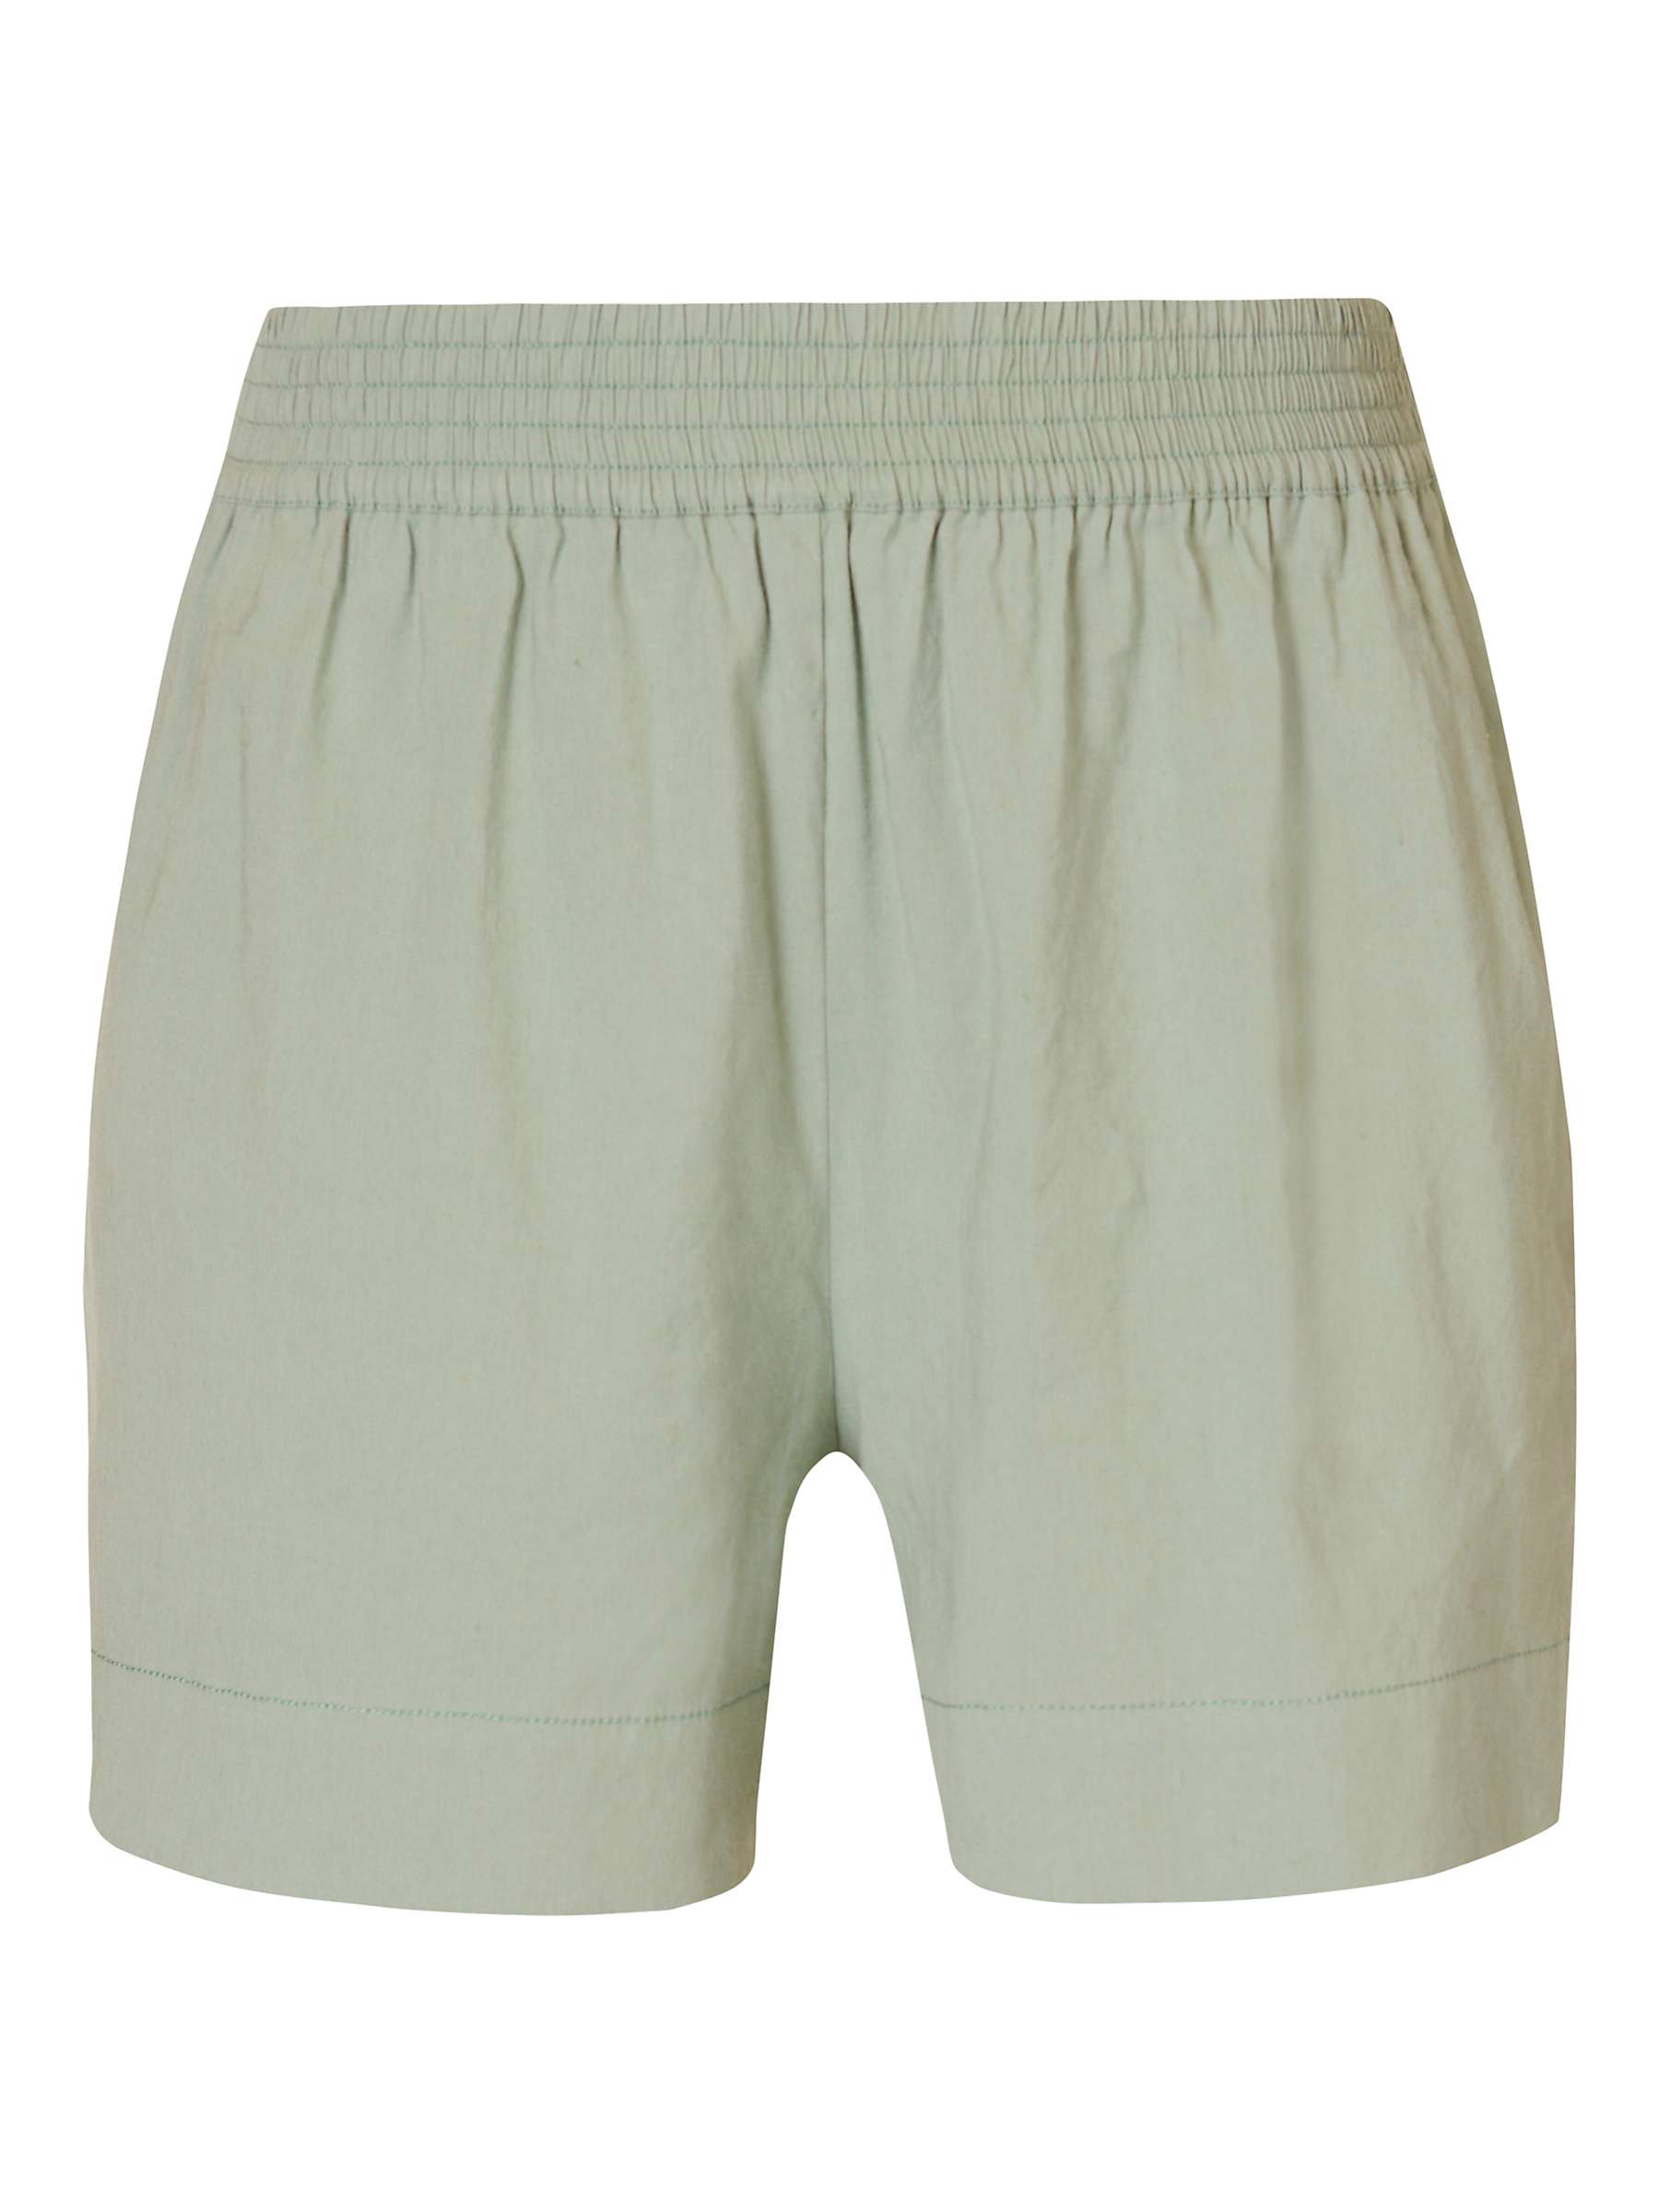 Buy Sweaty Betty Summer Stretch Linen Blend Shorts, Savannah Green Online at johnlewis.com